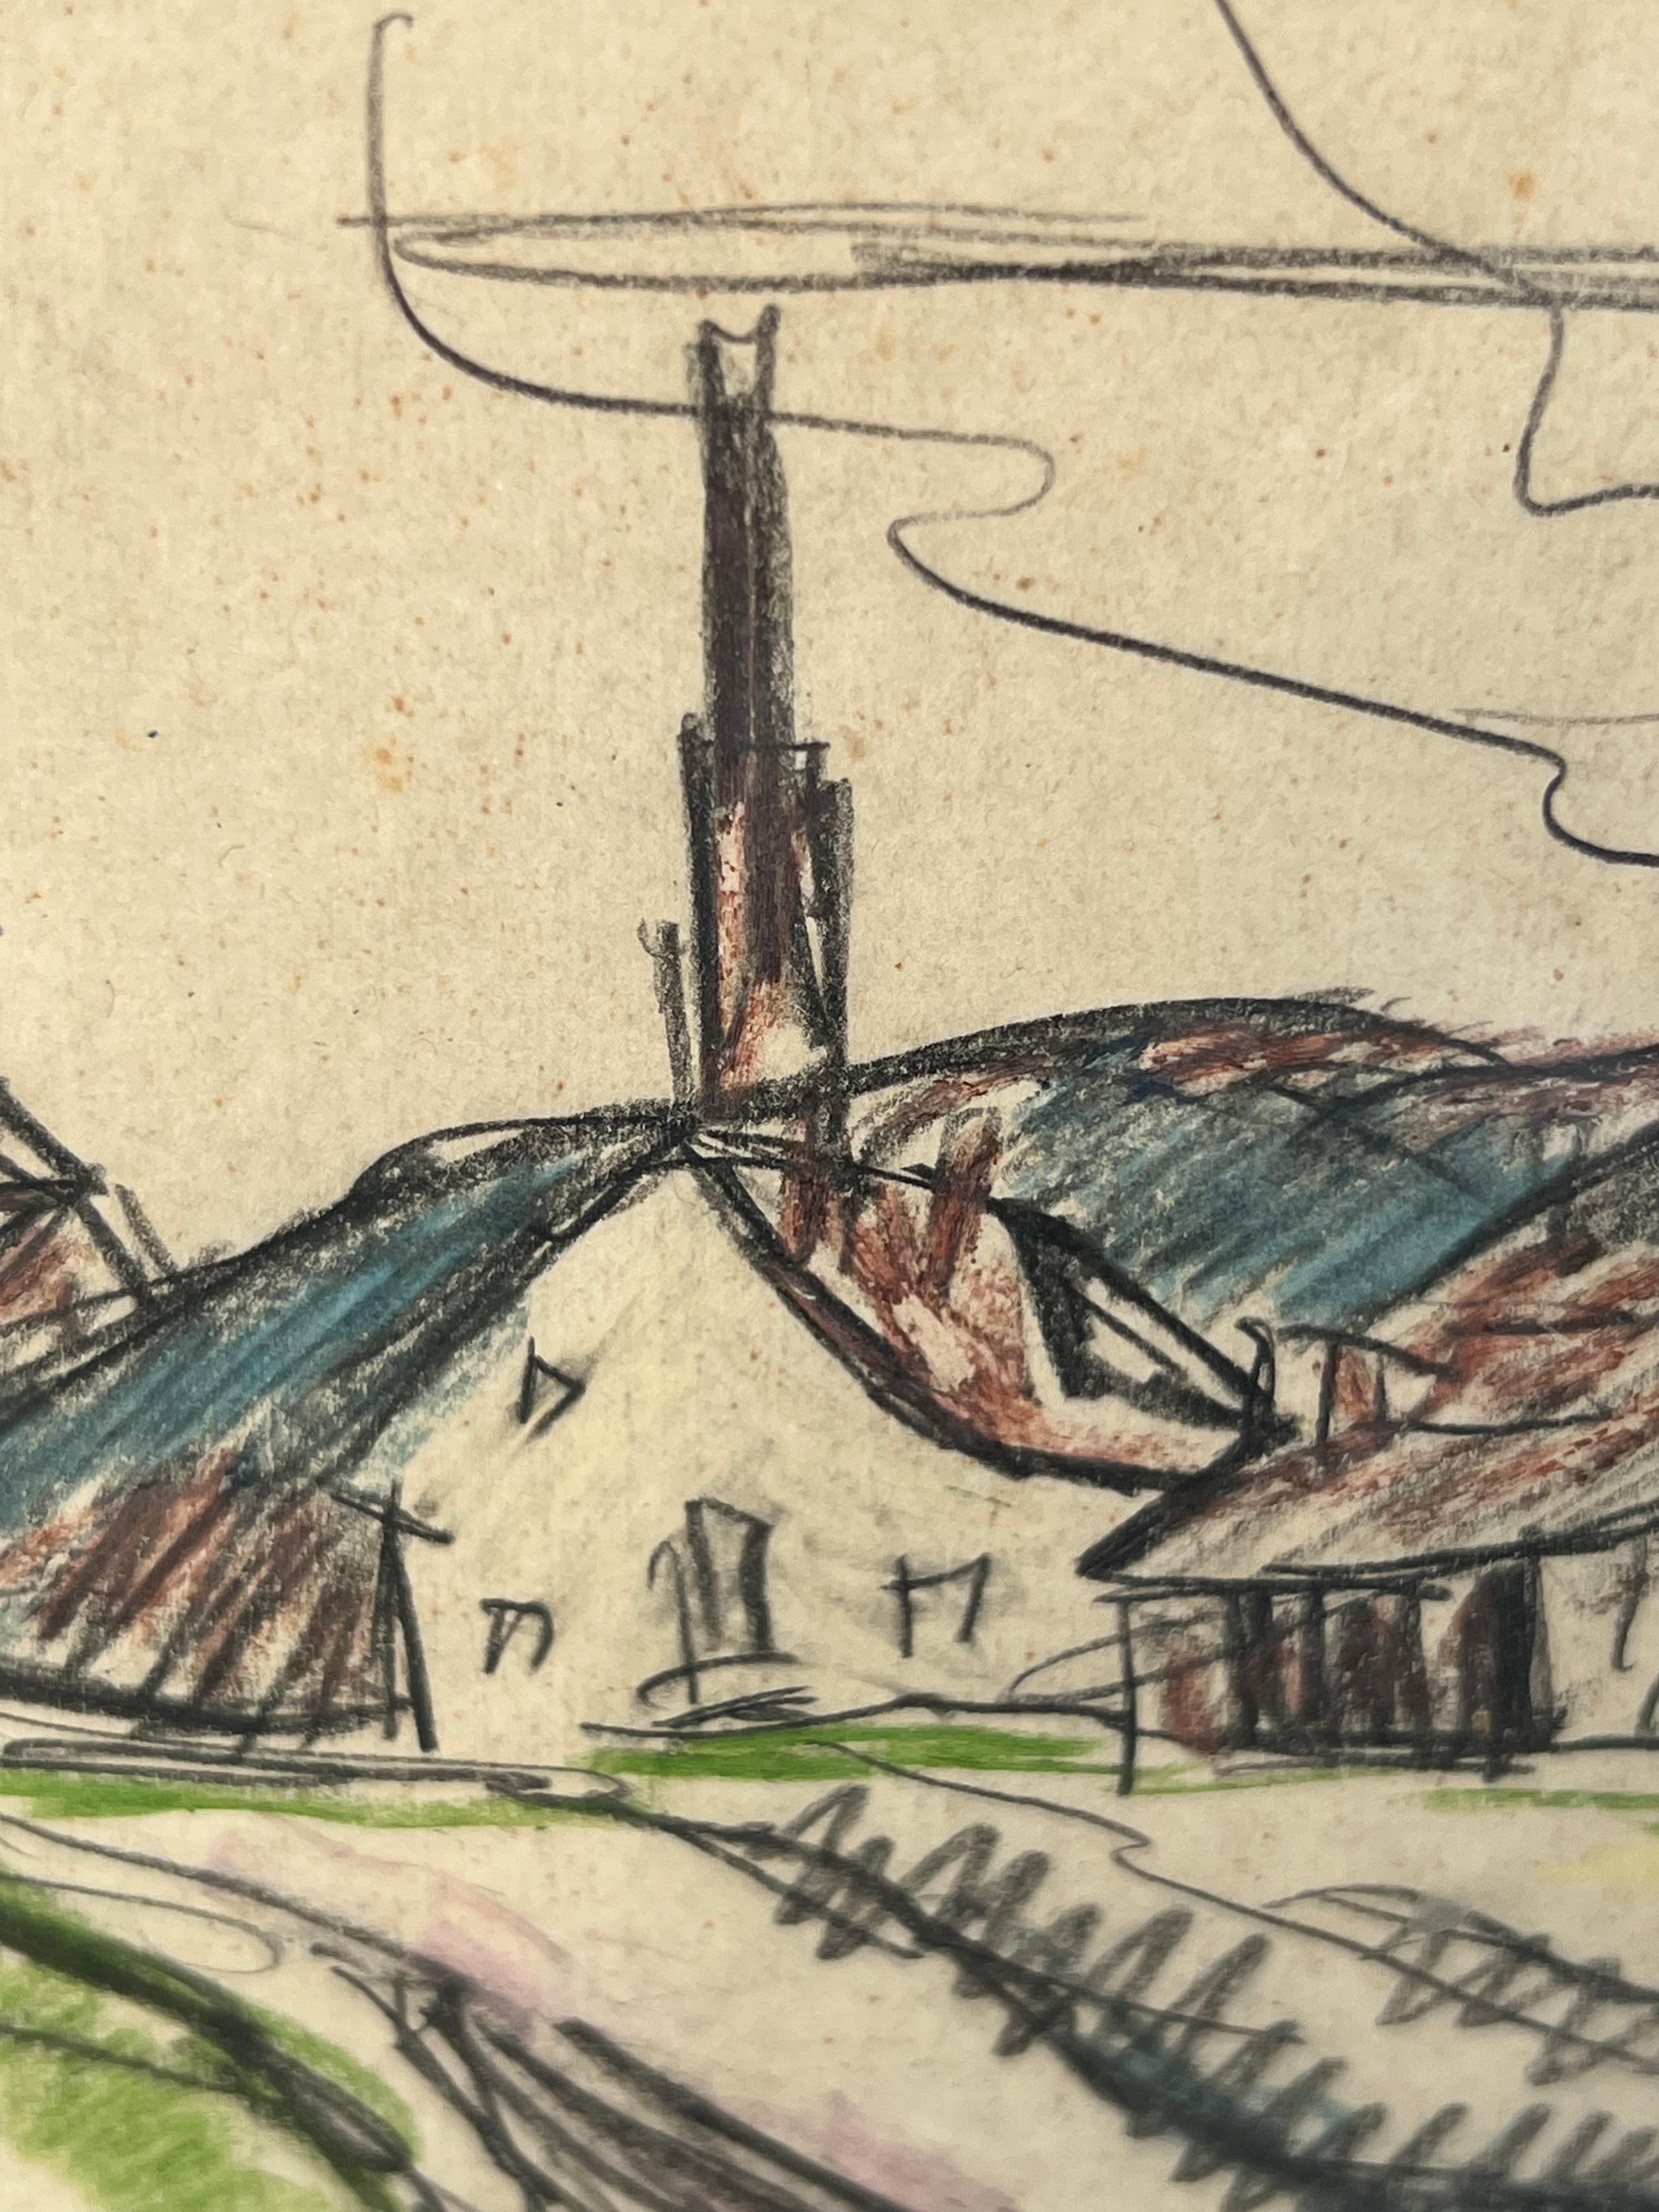 Dessin de paysage du début de l'ère moderne par l'artiste allemand Hermann Max Pechstein. L'œuvre représente de manière gestuelle un chemin sinueux menant à un petit village. Signé d'un monogramme dans le coin inférieur droit du recto. Elle est